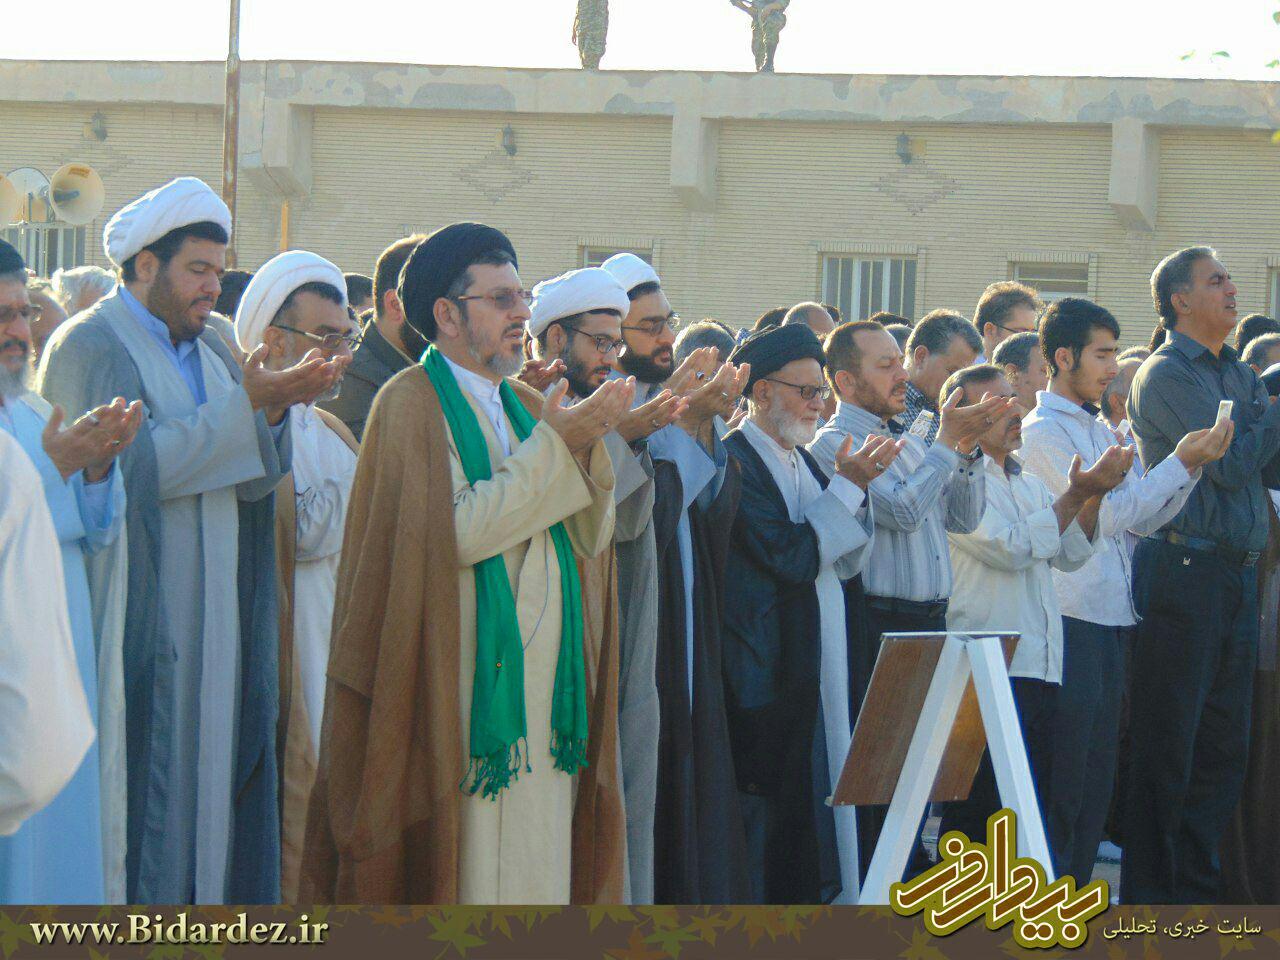 عید بندگی و نماز با شکوه عید سعید فطر در دزفول+تصاویر